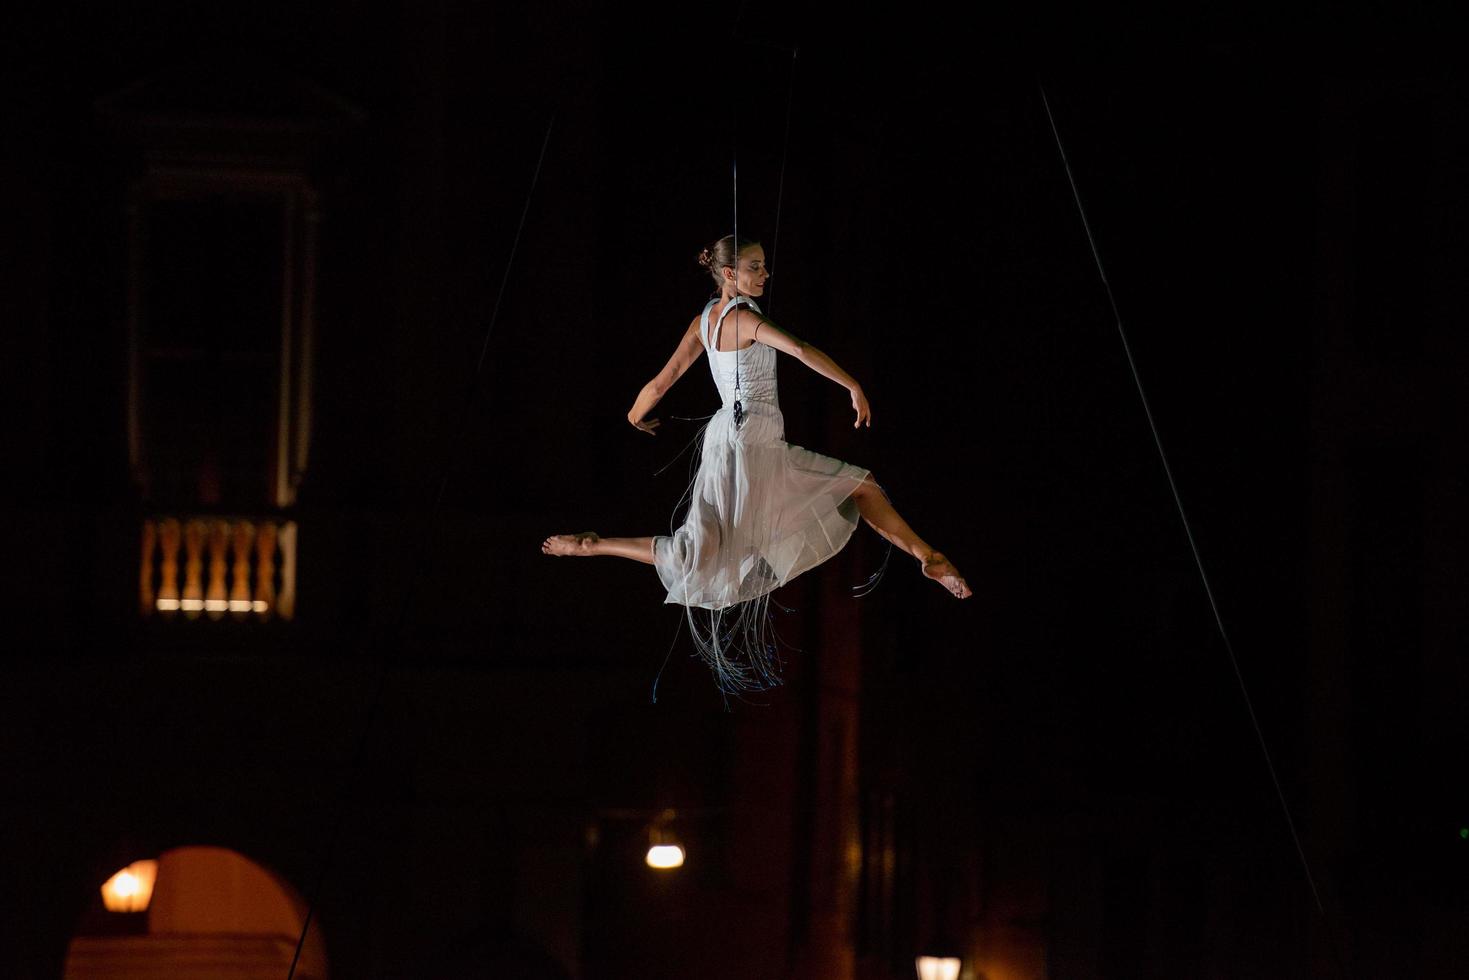 bergamo itália 14 de setembro de 2018 performance de dança acrobática suspensa no ar performance de molecoleshow foto